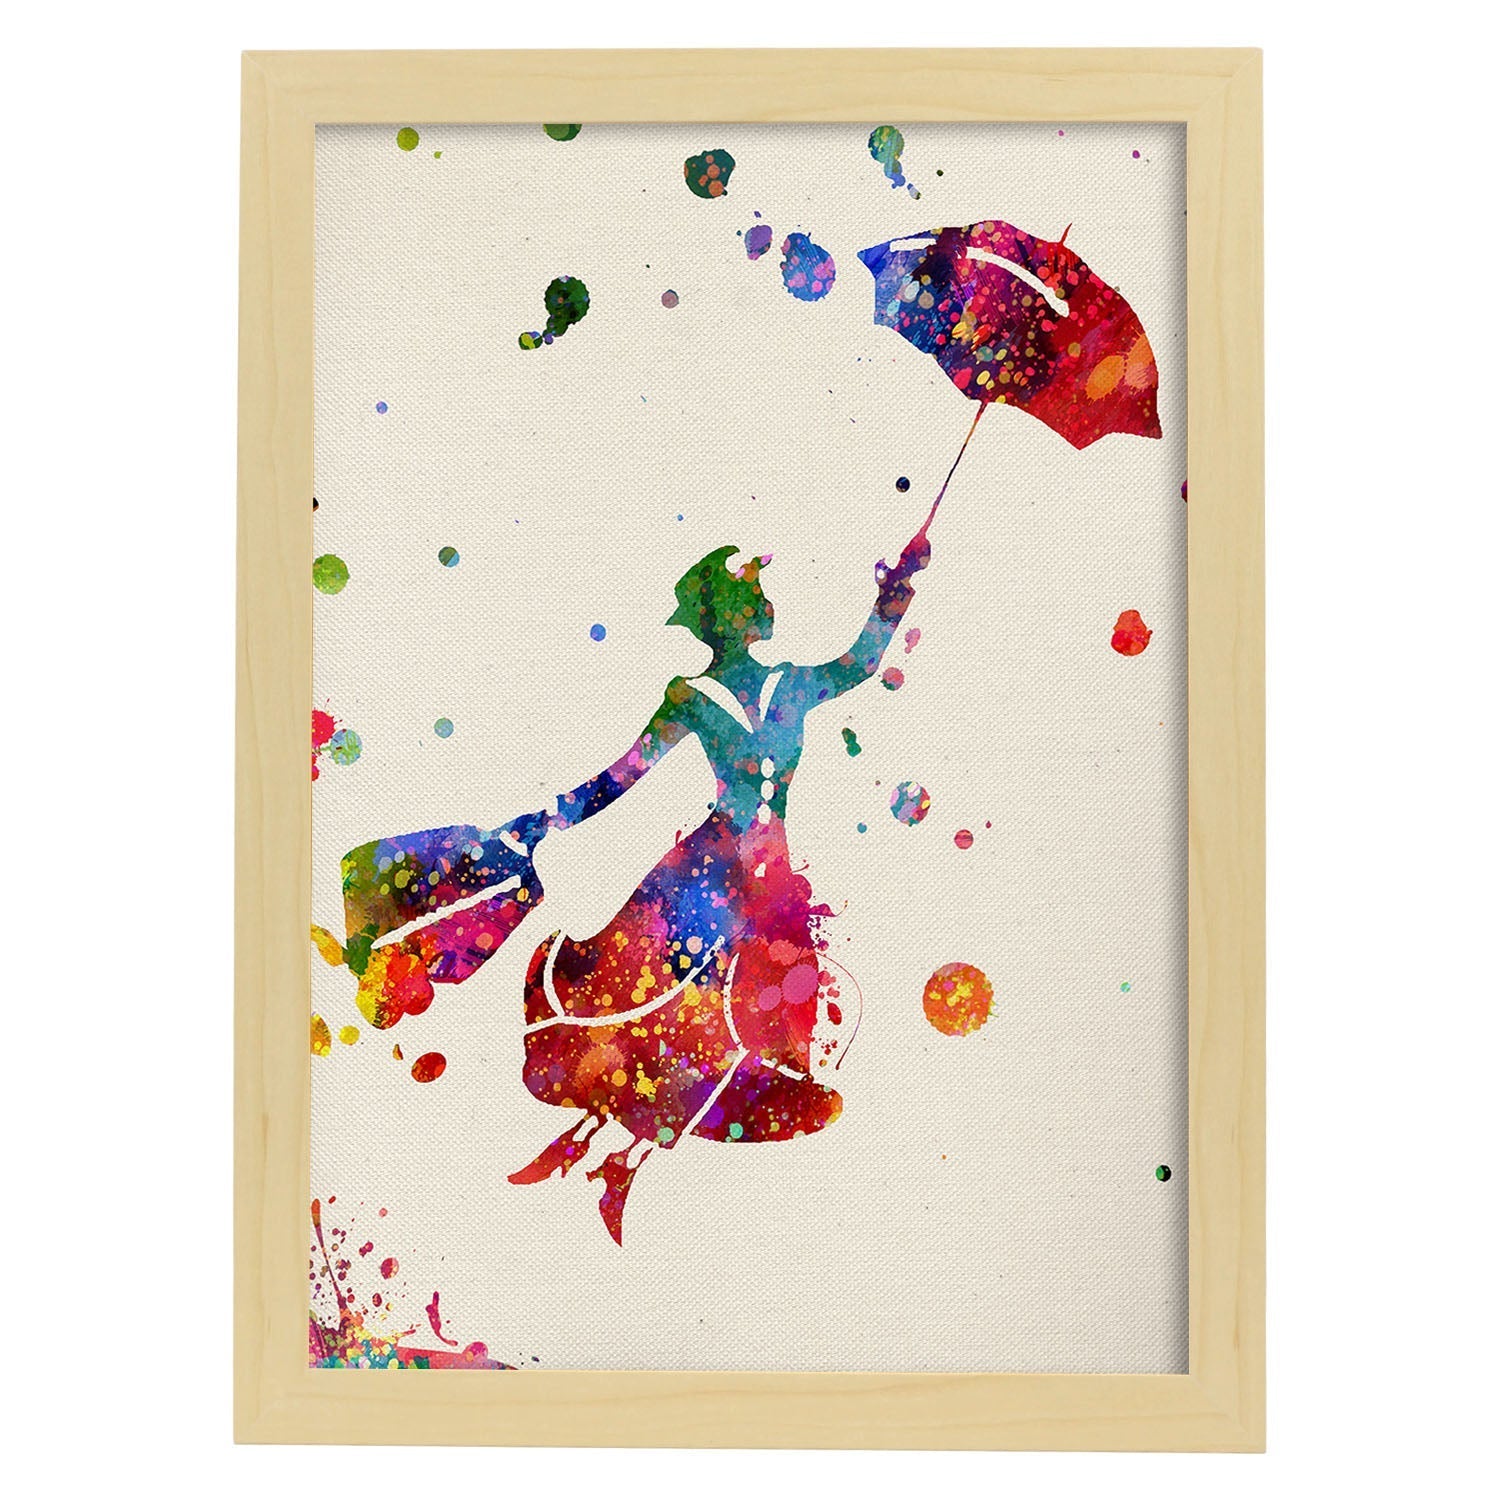 Lámina de la famosa pelicula Mary Poppins (volando) en Poster estilo explosión de color . Papel 250 gr.-Artwork-Nacnic-A3-Marco Madera clara-Nacnic Estudio SL